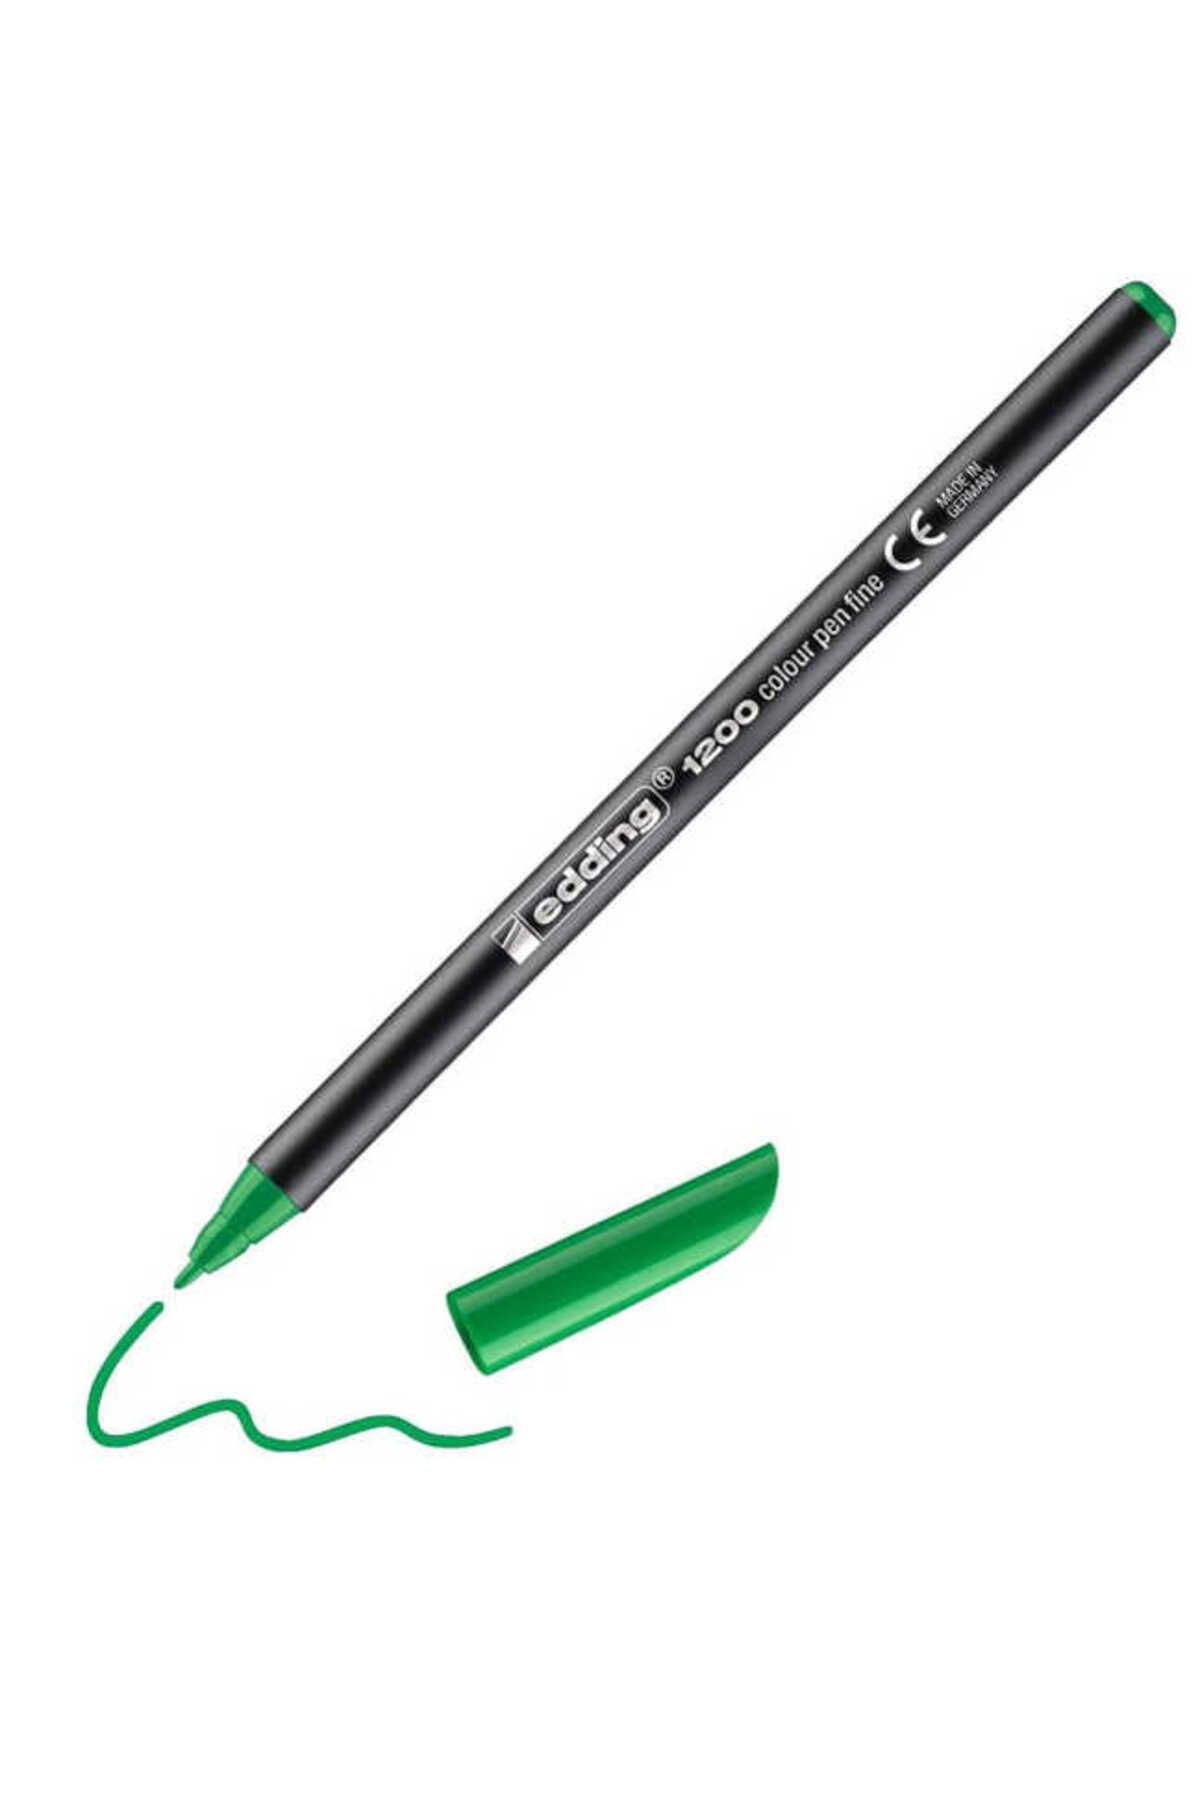 Edding Yeşil Keçeli Kalem Kesik Uçlu E-2200